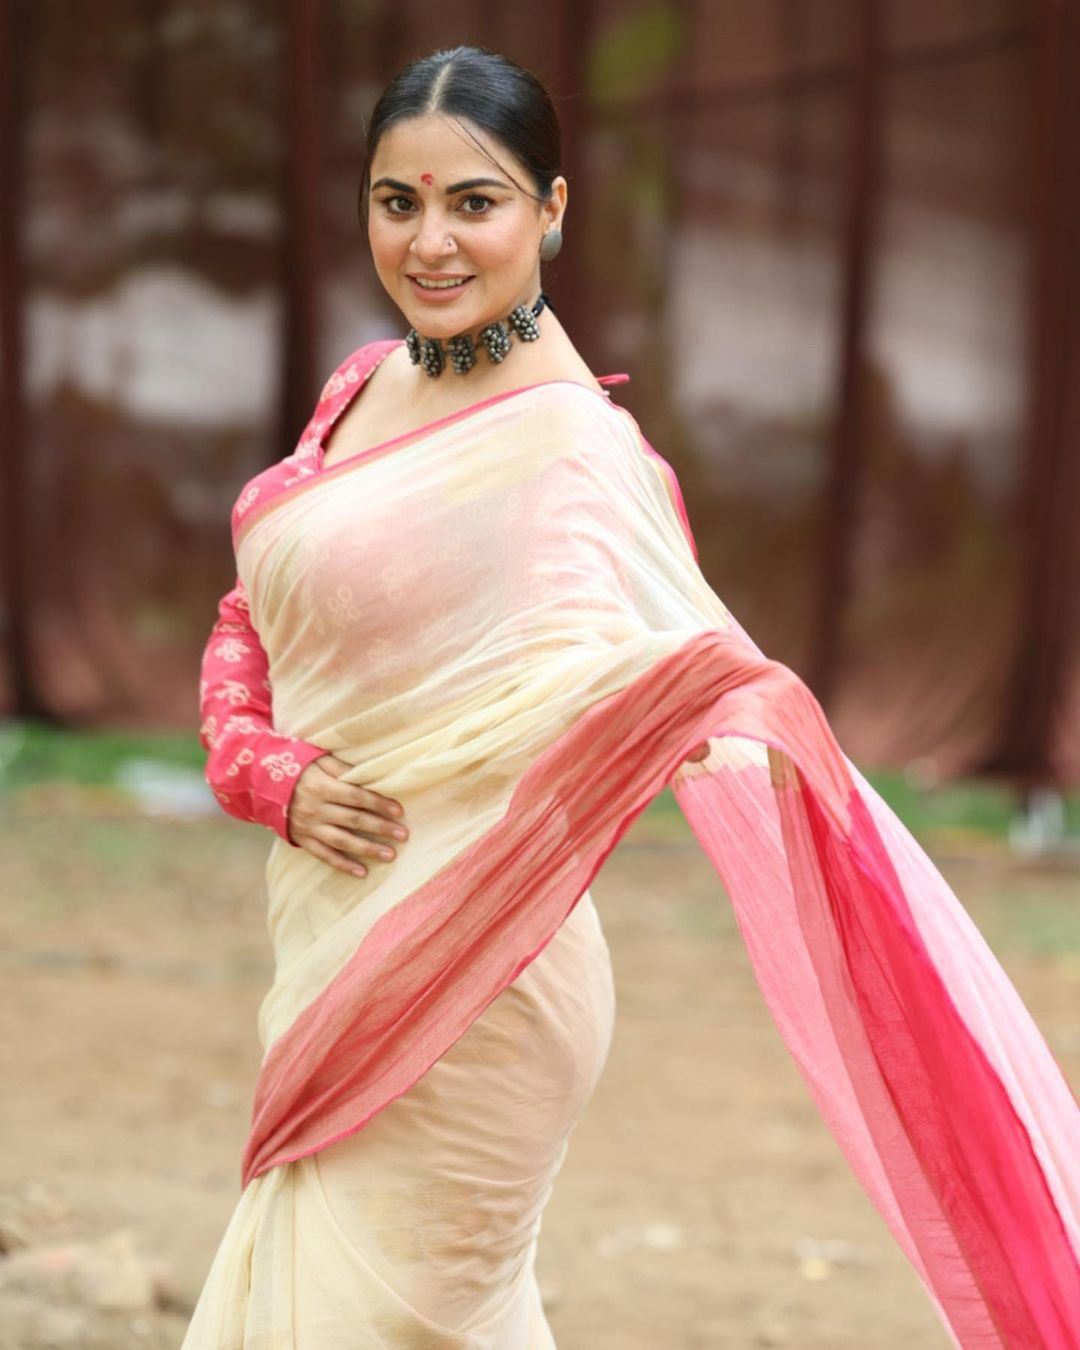 Digital Printed Soft Chanderi Cotton Saree with Banglori Satin Blouse |  Cotton saree designs, Saree trends, Saree look